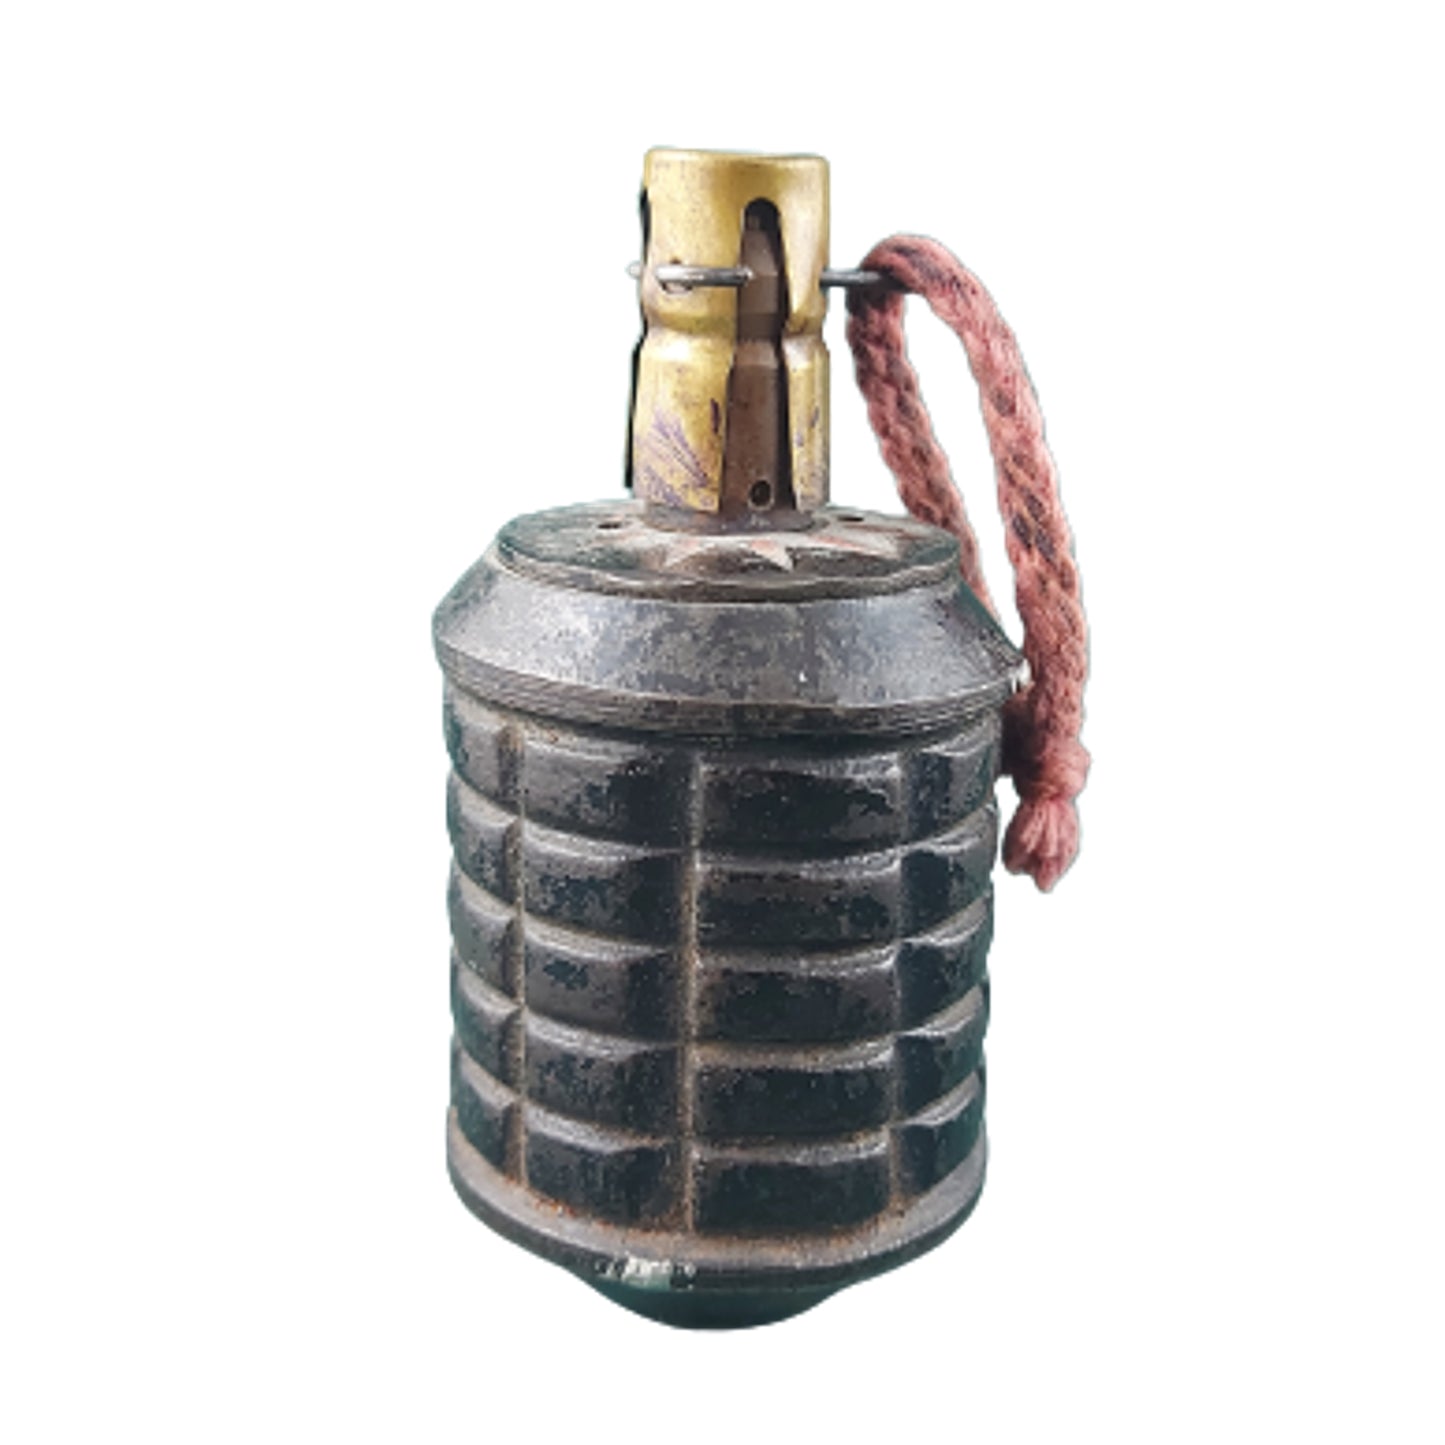 Inert WW2 Japanese Type 97 Fragmentation Grenade